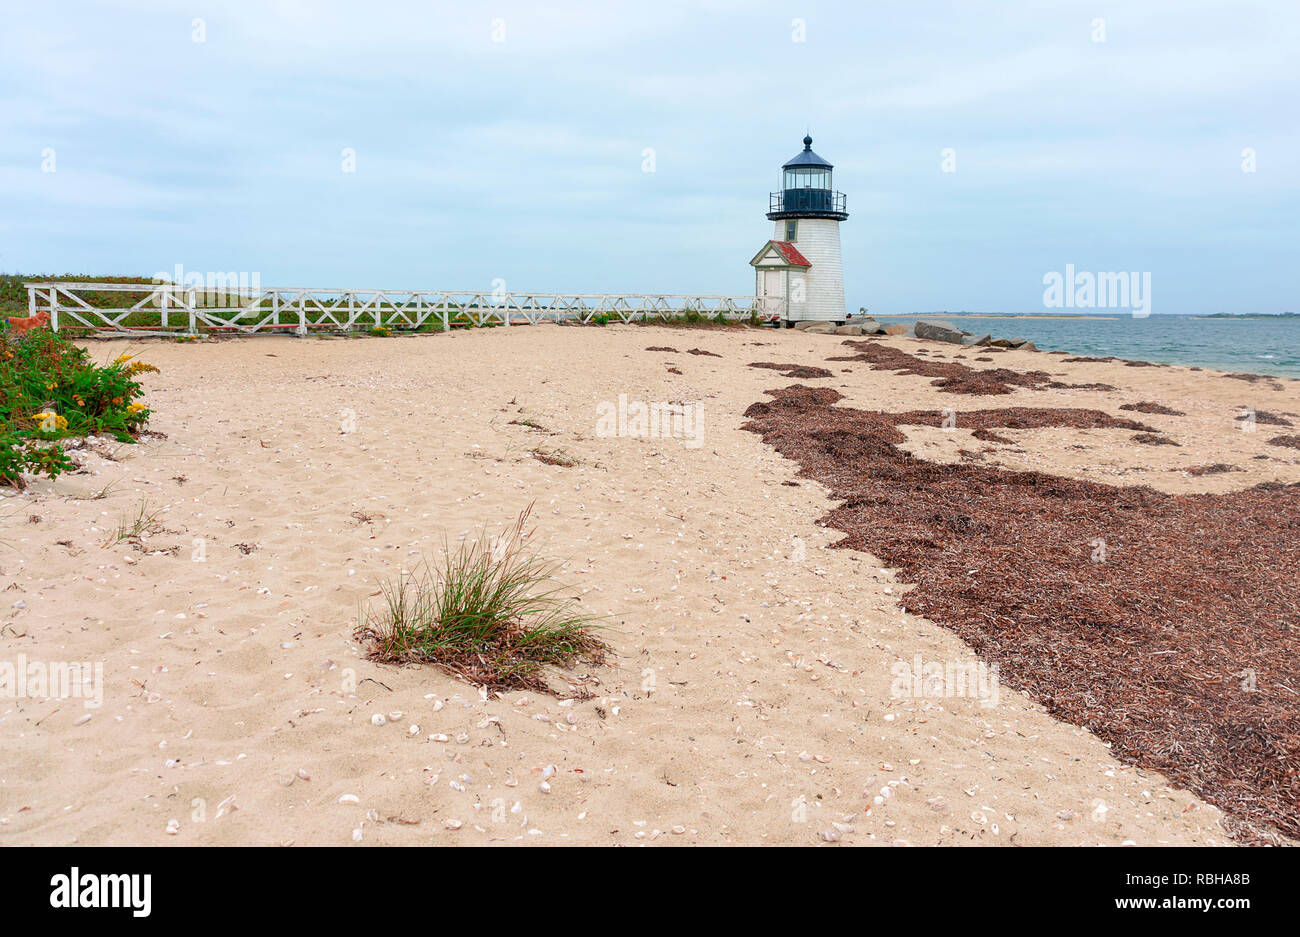 Brant Point Lighthouse, famosa atracción turística e histórica de la isla de Nantucket Foto de stock